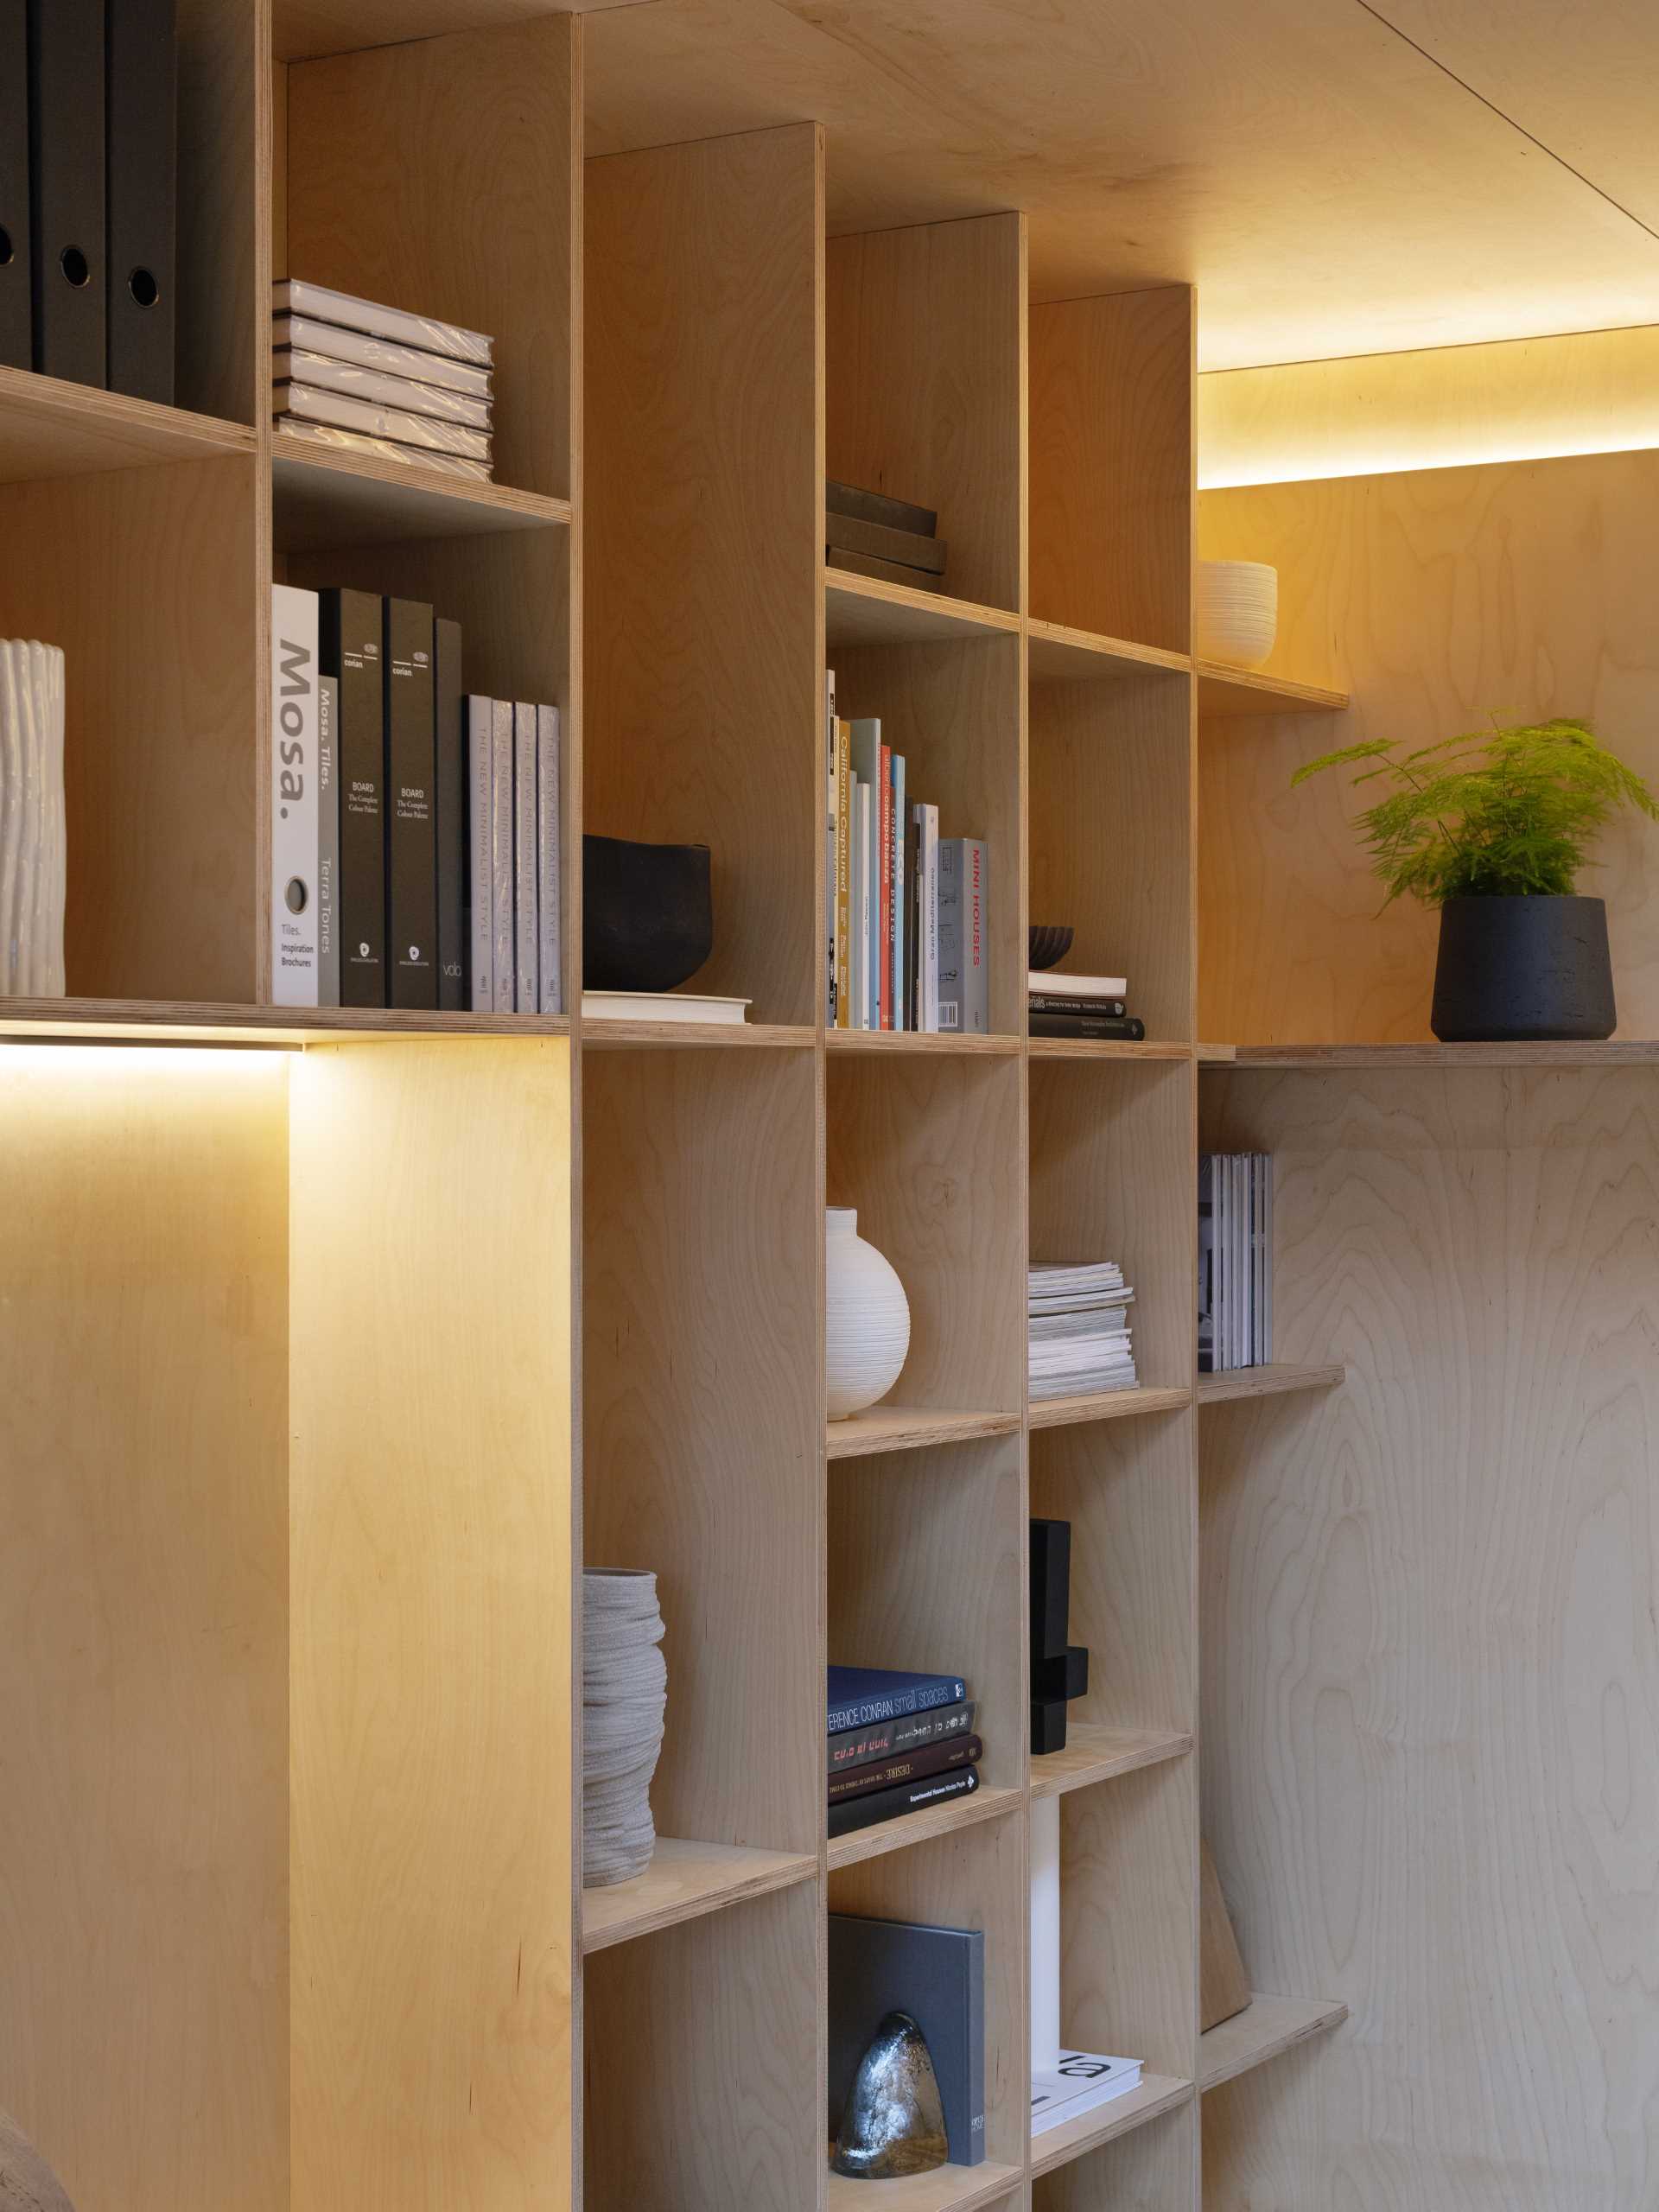 دیواری از قفسه های کتاب تخته سه لا و نور مخفی.